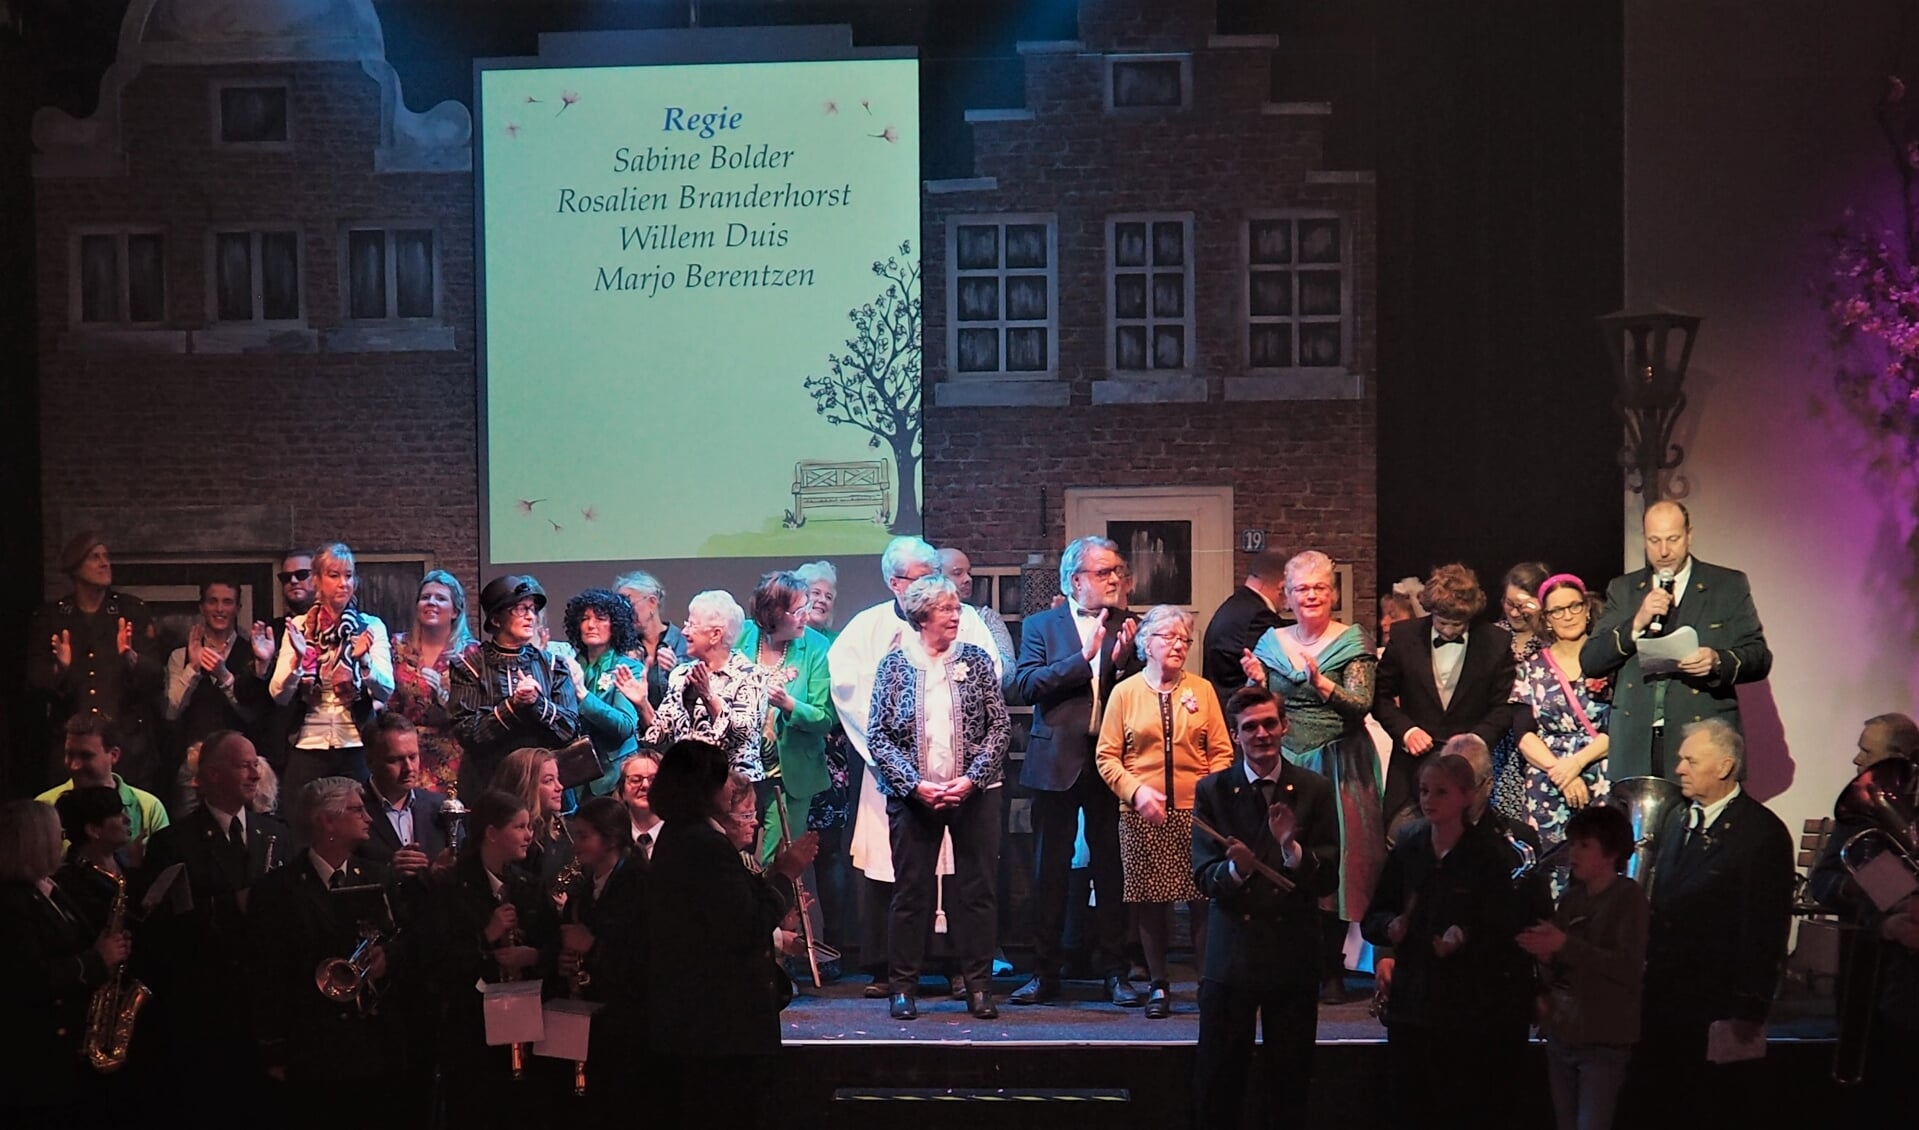 De muzikanten van Amicitia speelden ook mee in de jubileumvoorstelling van de toneelvereniging. Foto Lies Gerritsen-Storteler